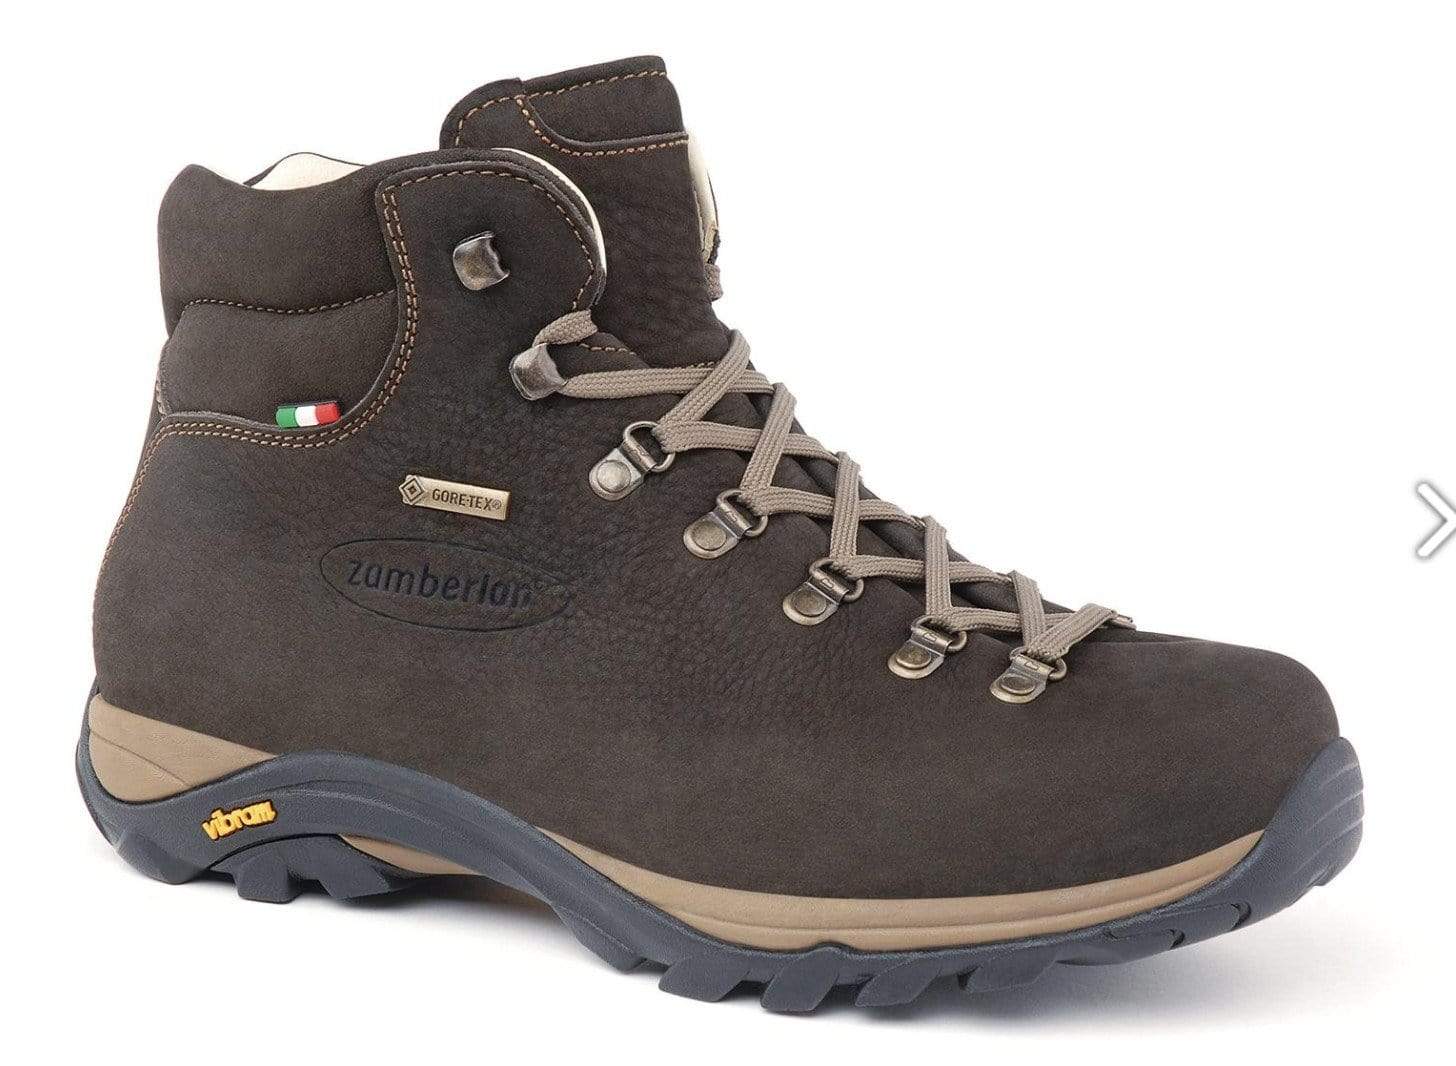 Zamberlan Shoes 7 UK (41 EU) / Dark Brown Zamberlan 320 Trail Lite EVO GTX M's